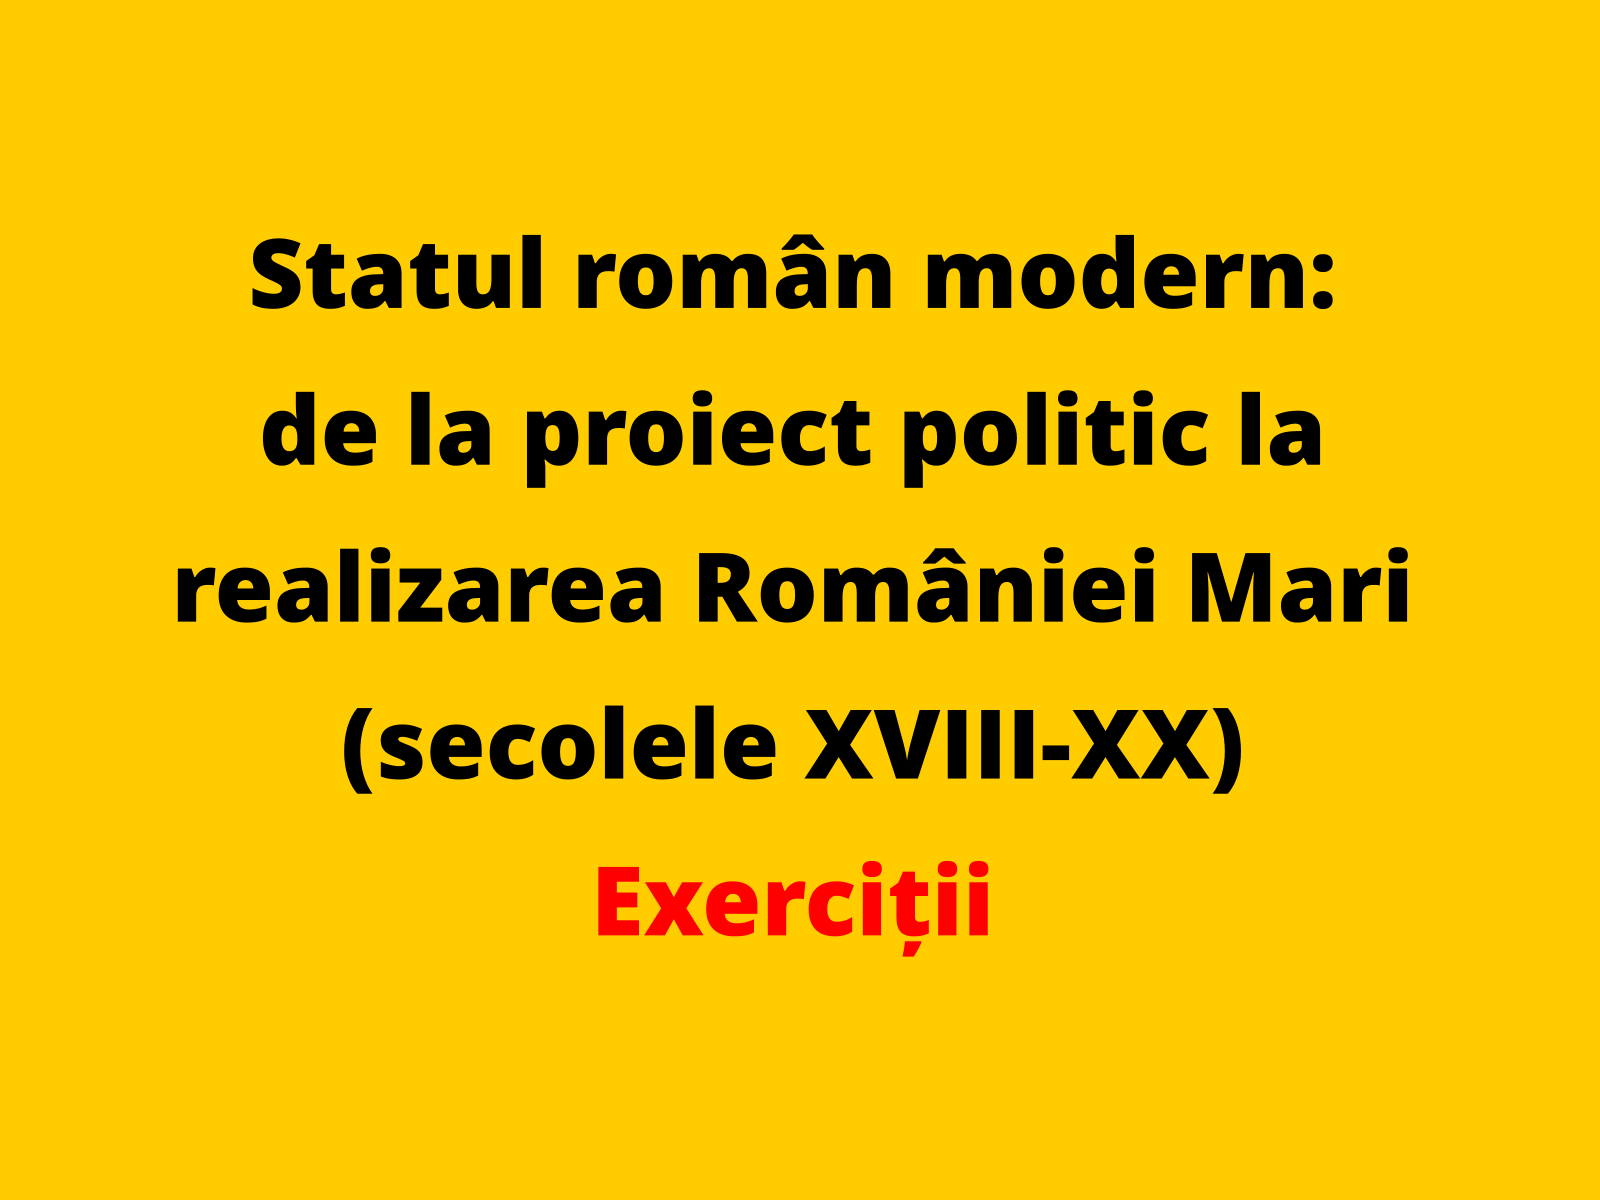 Prezentați două proiecte politice din prima jumătate a secolului al XIX-lea care au contribuit la formarea statului român modern